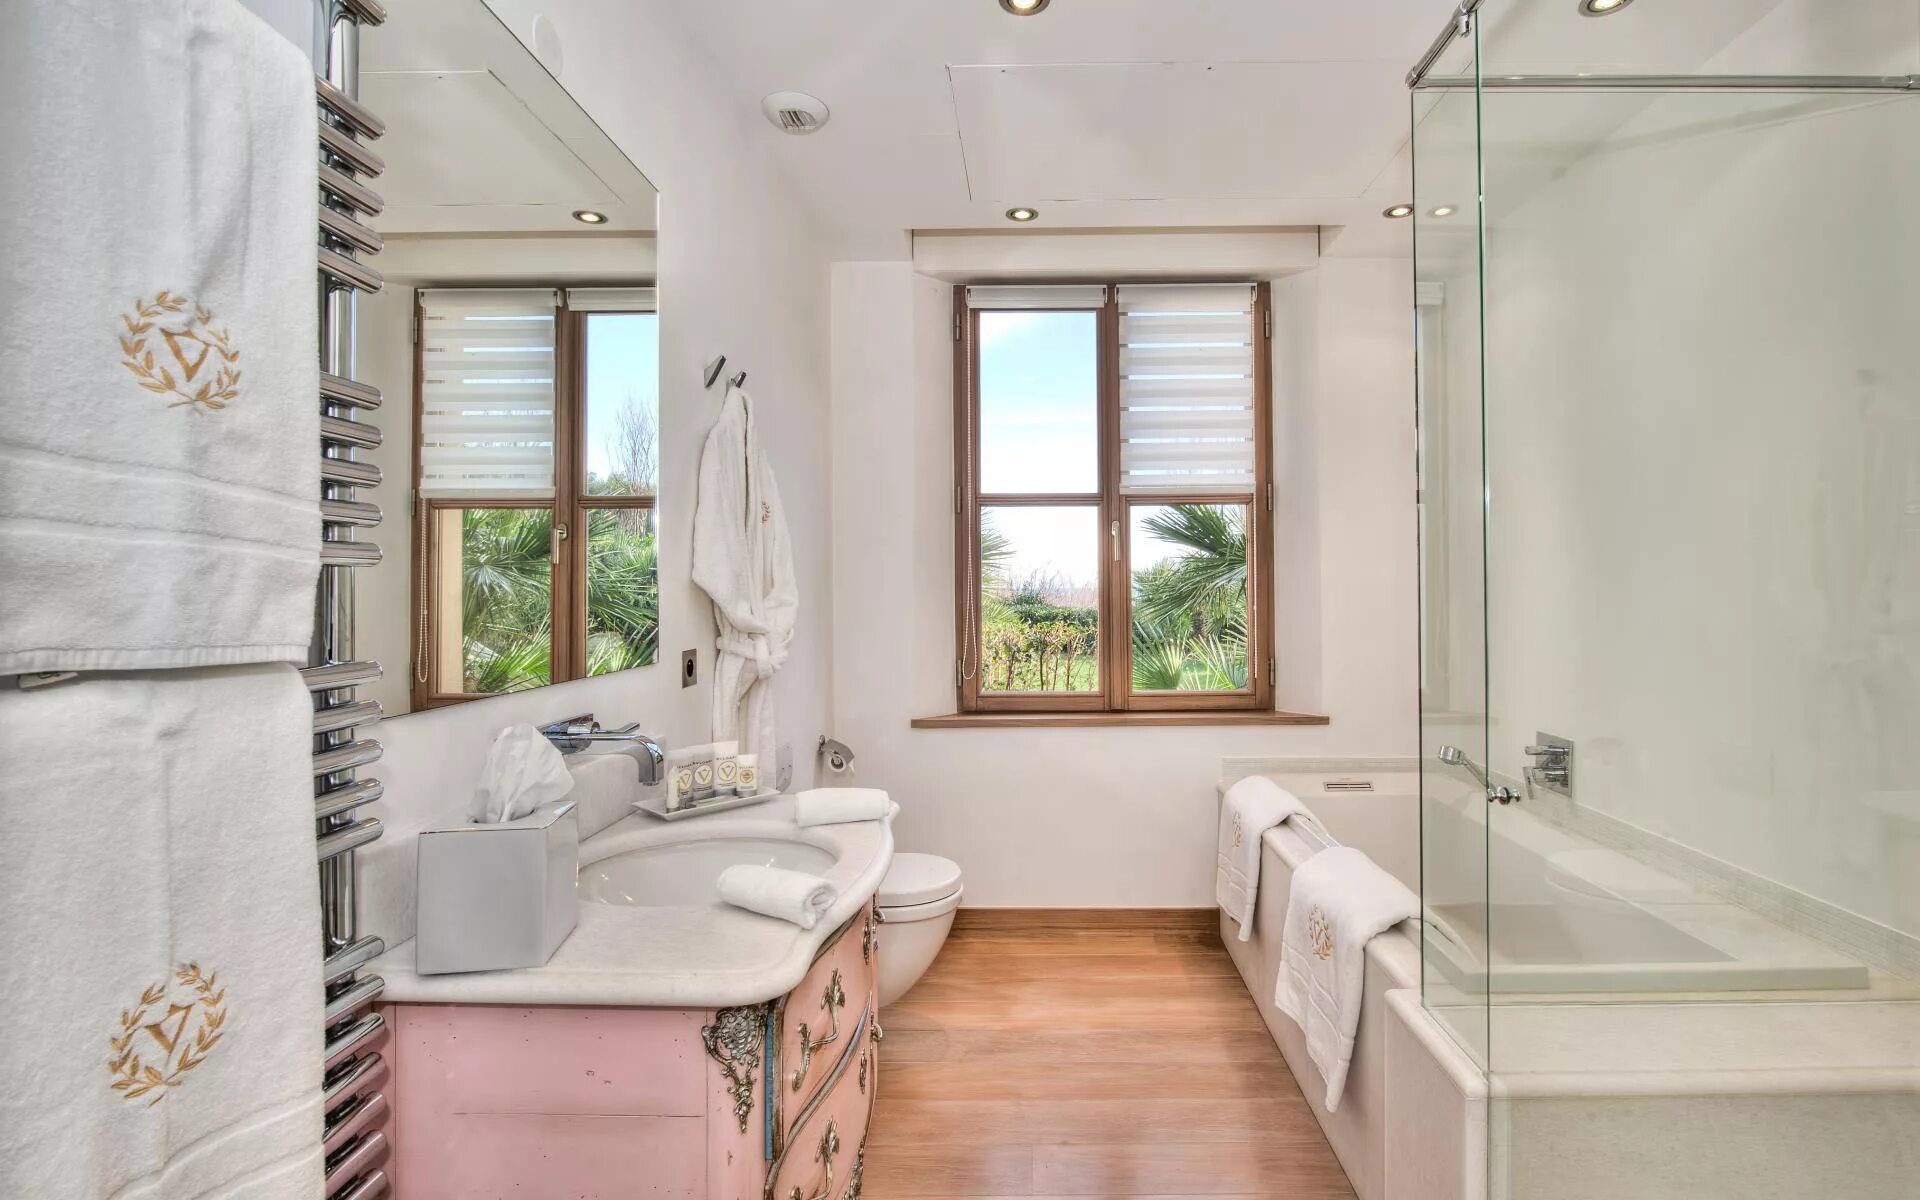 Ванна в частном доме планировка. Небольшая ванная с окном. Проект ванной комнаты с окном. Ванная комната с окном в частном. Ванная комната с окном в частном доме.